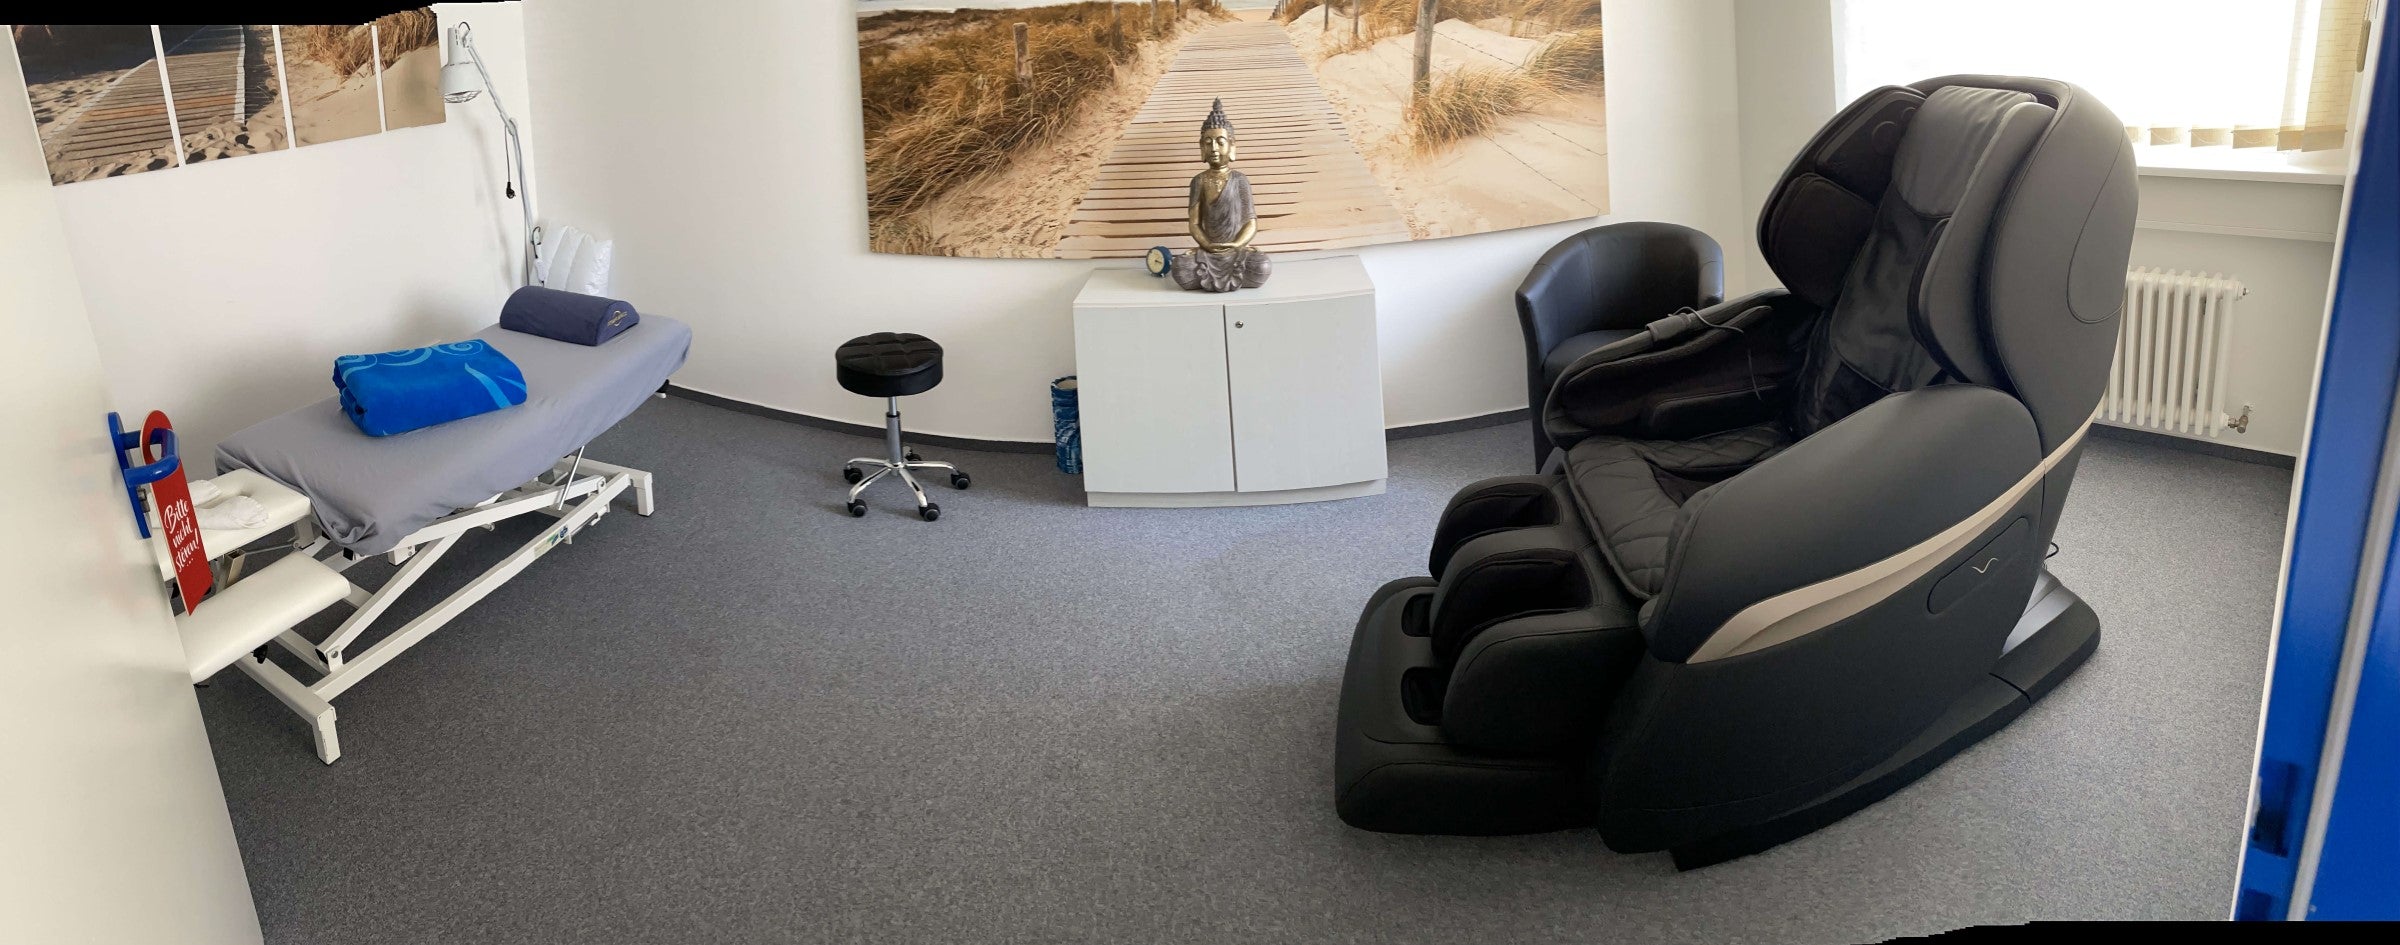 Ghế massage trong sử dụng cho khách hàng doanh nghiệp